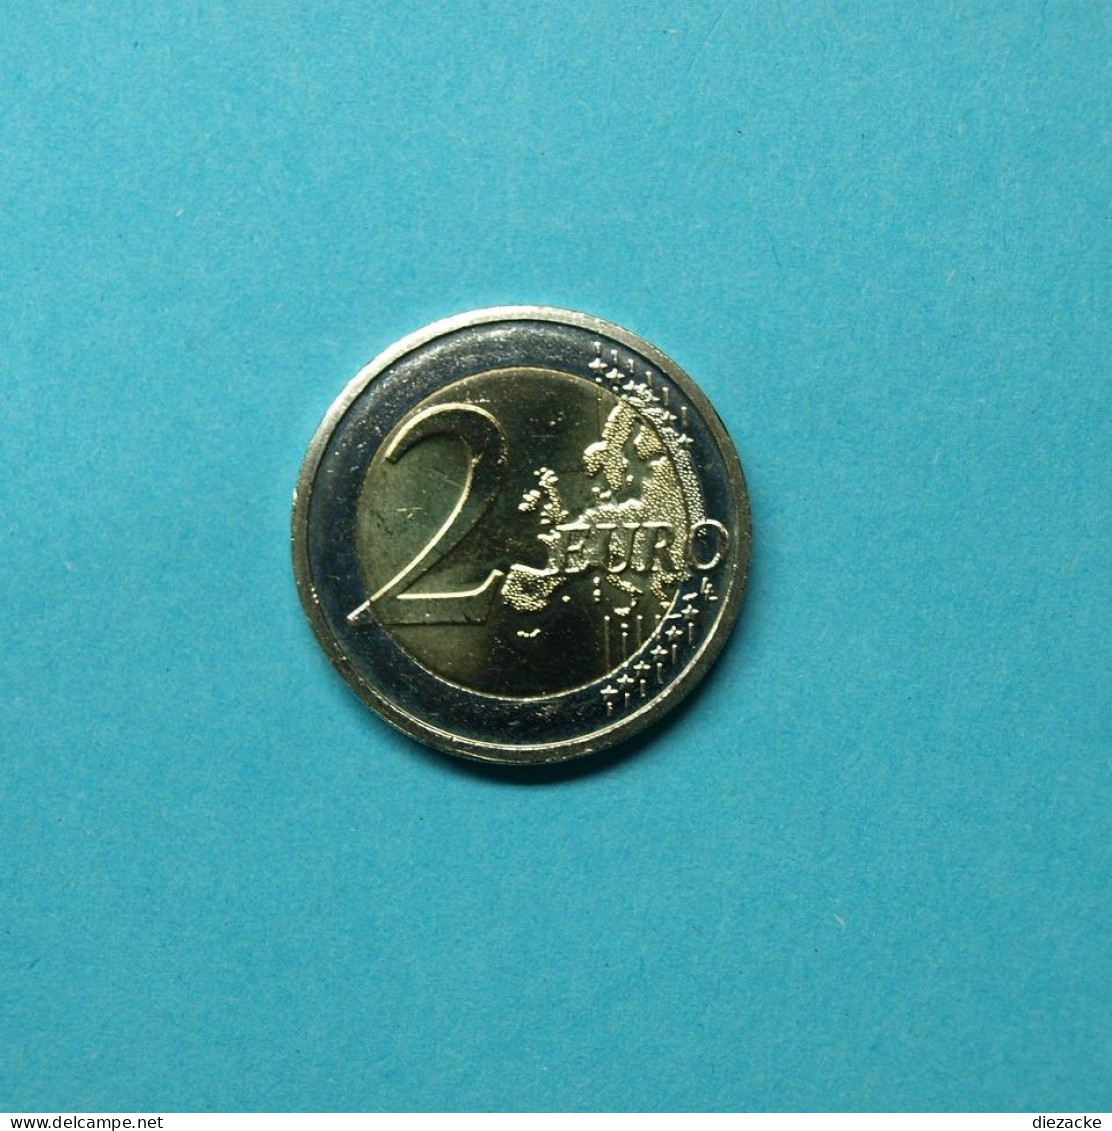 Irland 2012 2 Euro 10 Jahre Euro Bargeld Unzirkuliert (M4413 - Irlande